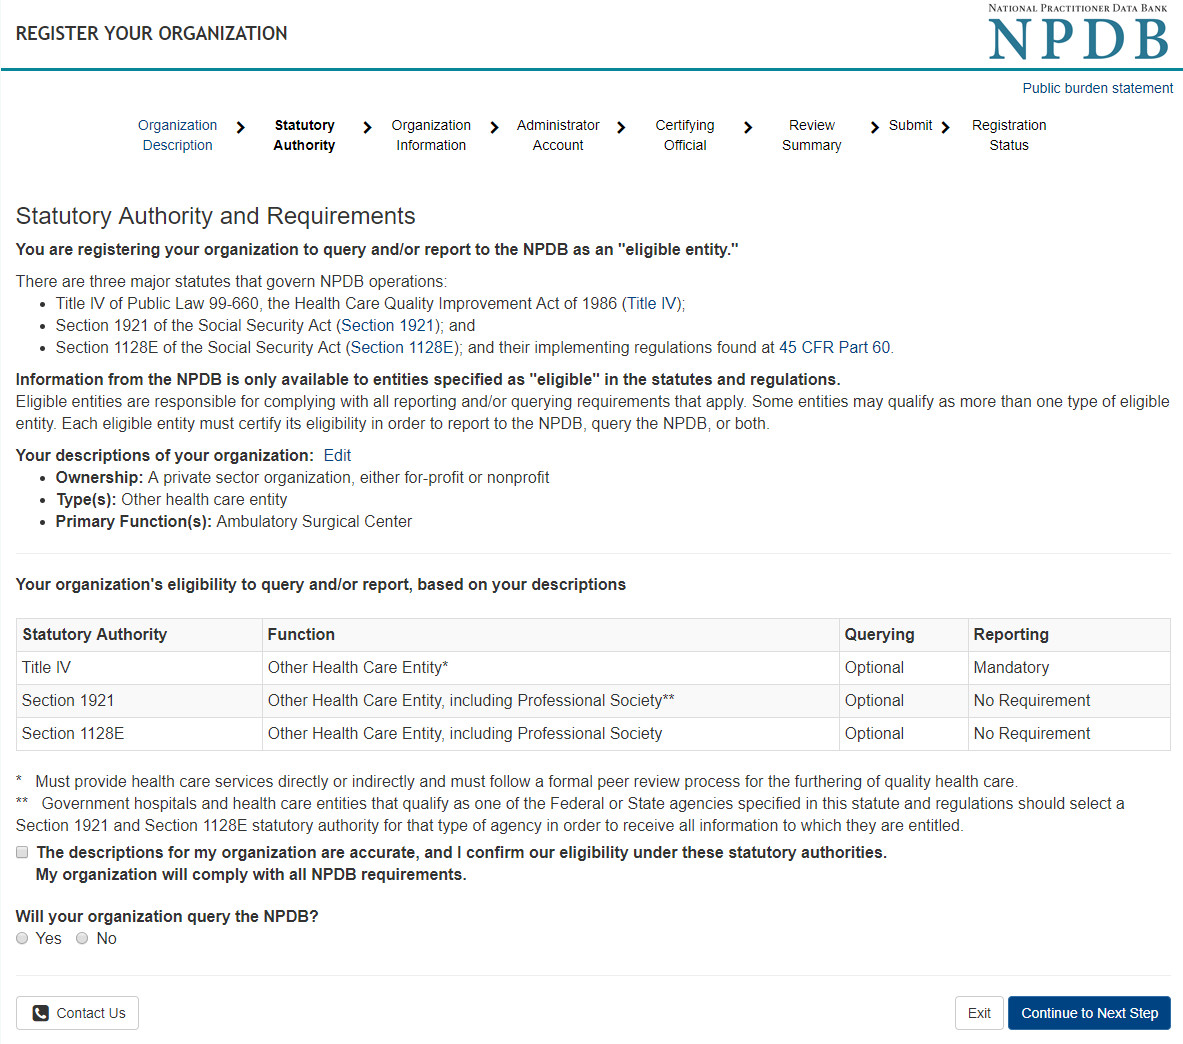 Screenshot of statutory authorities for your organization